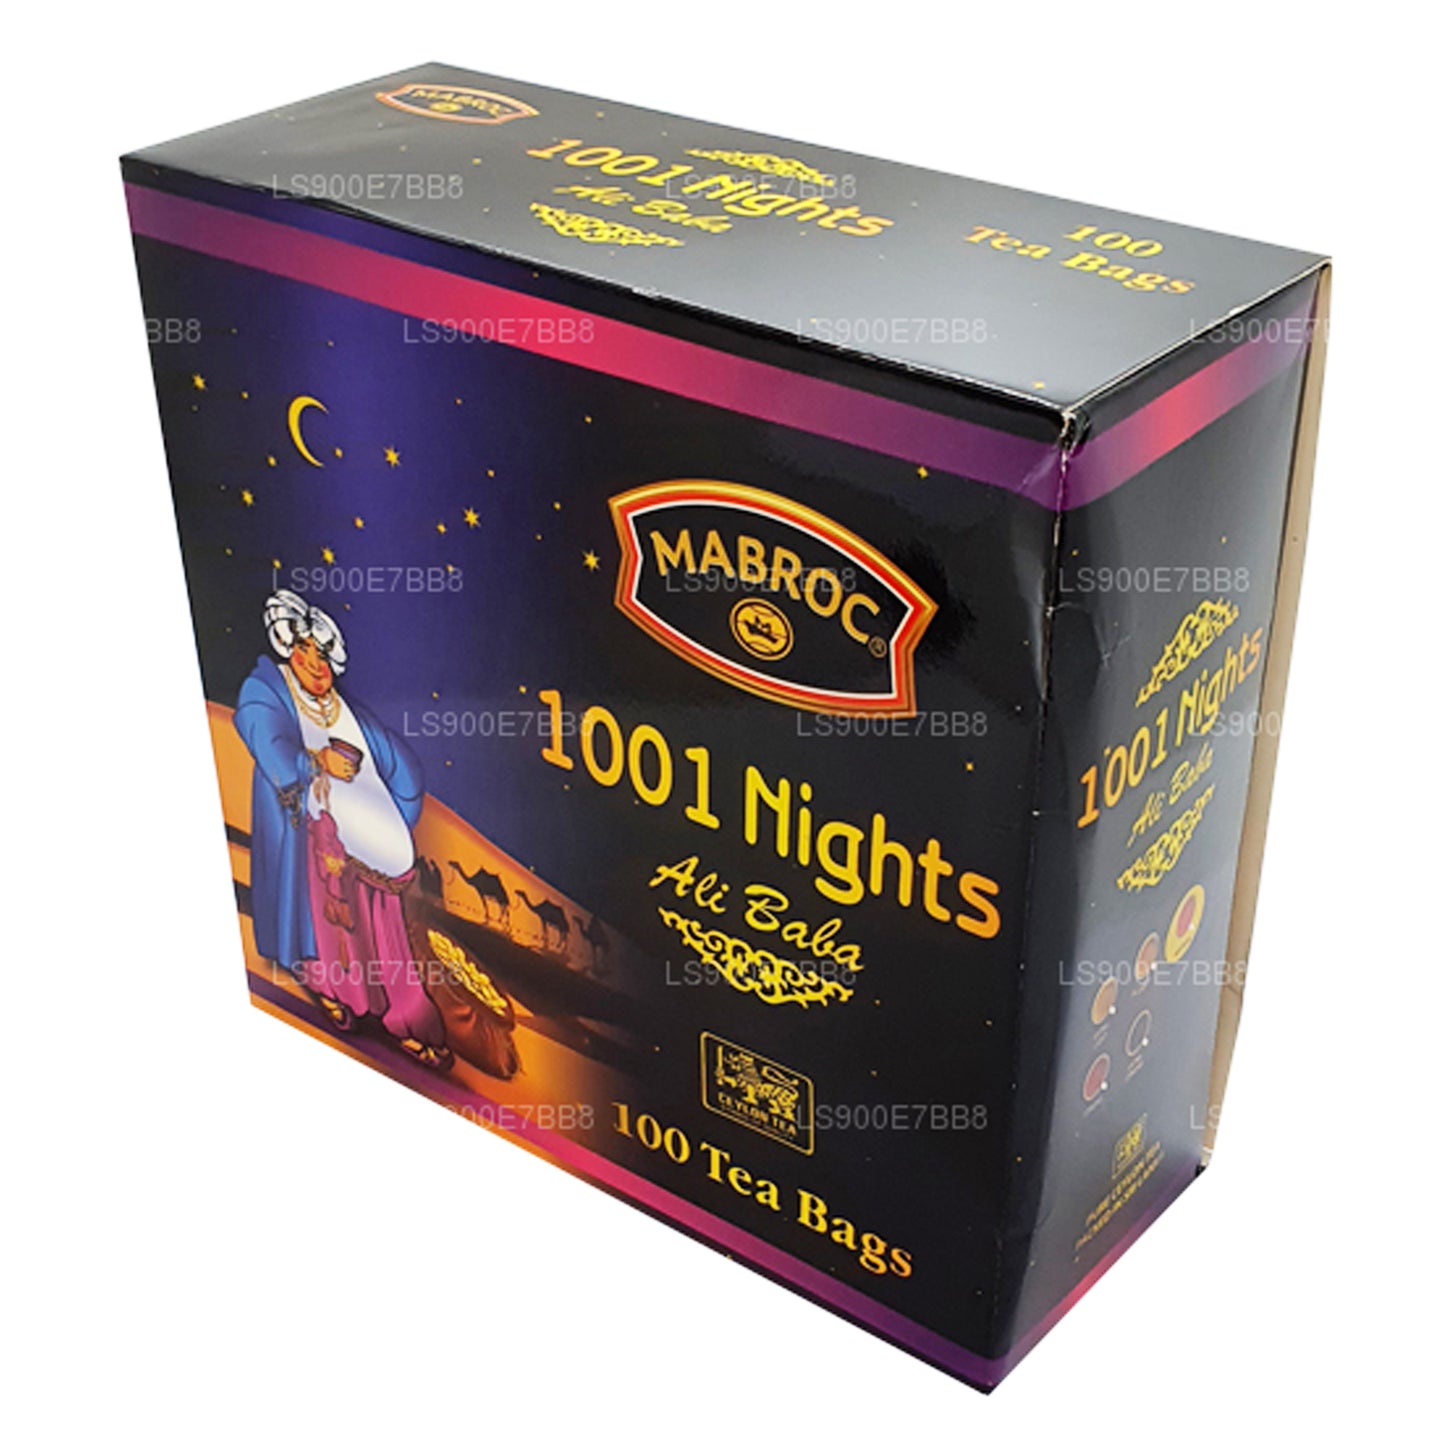 Mabroc Night of 1001 Stars Ali Baba (200g) 100 Tea Bags